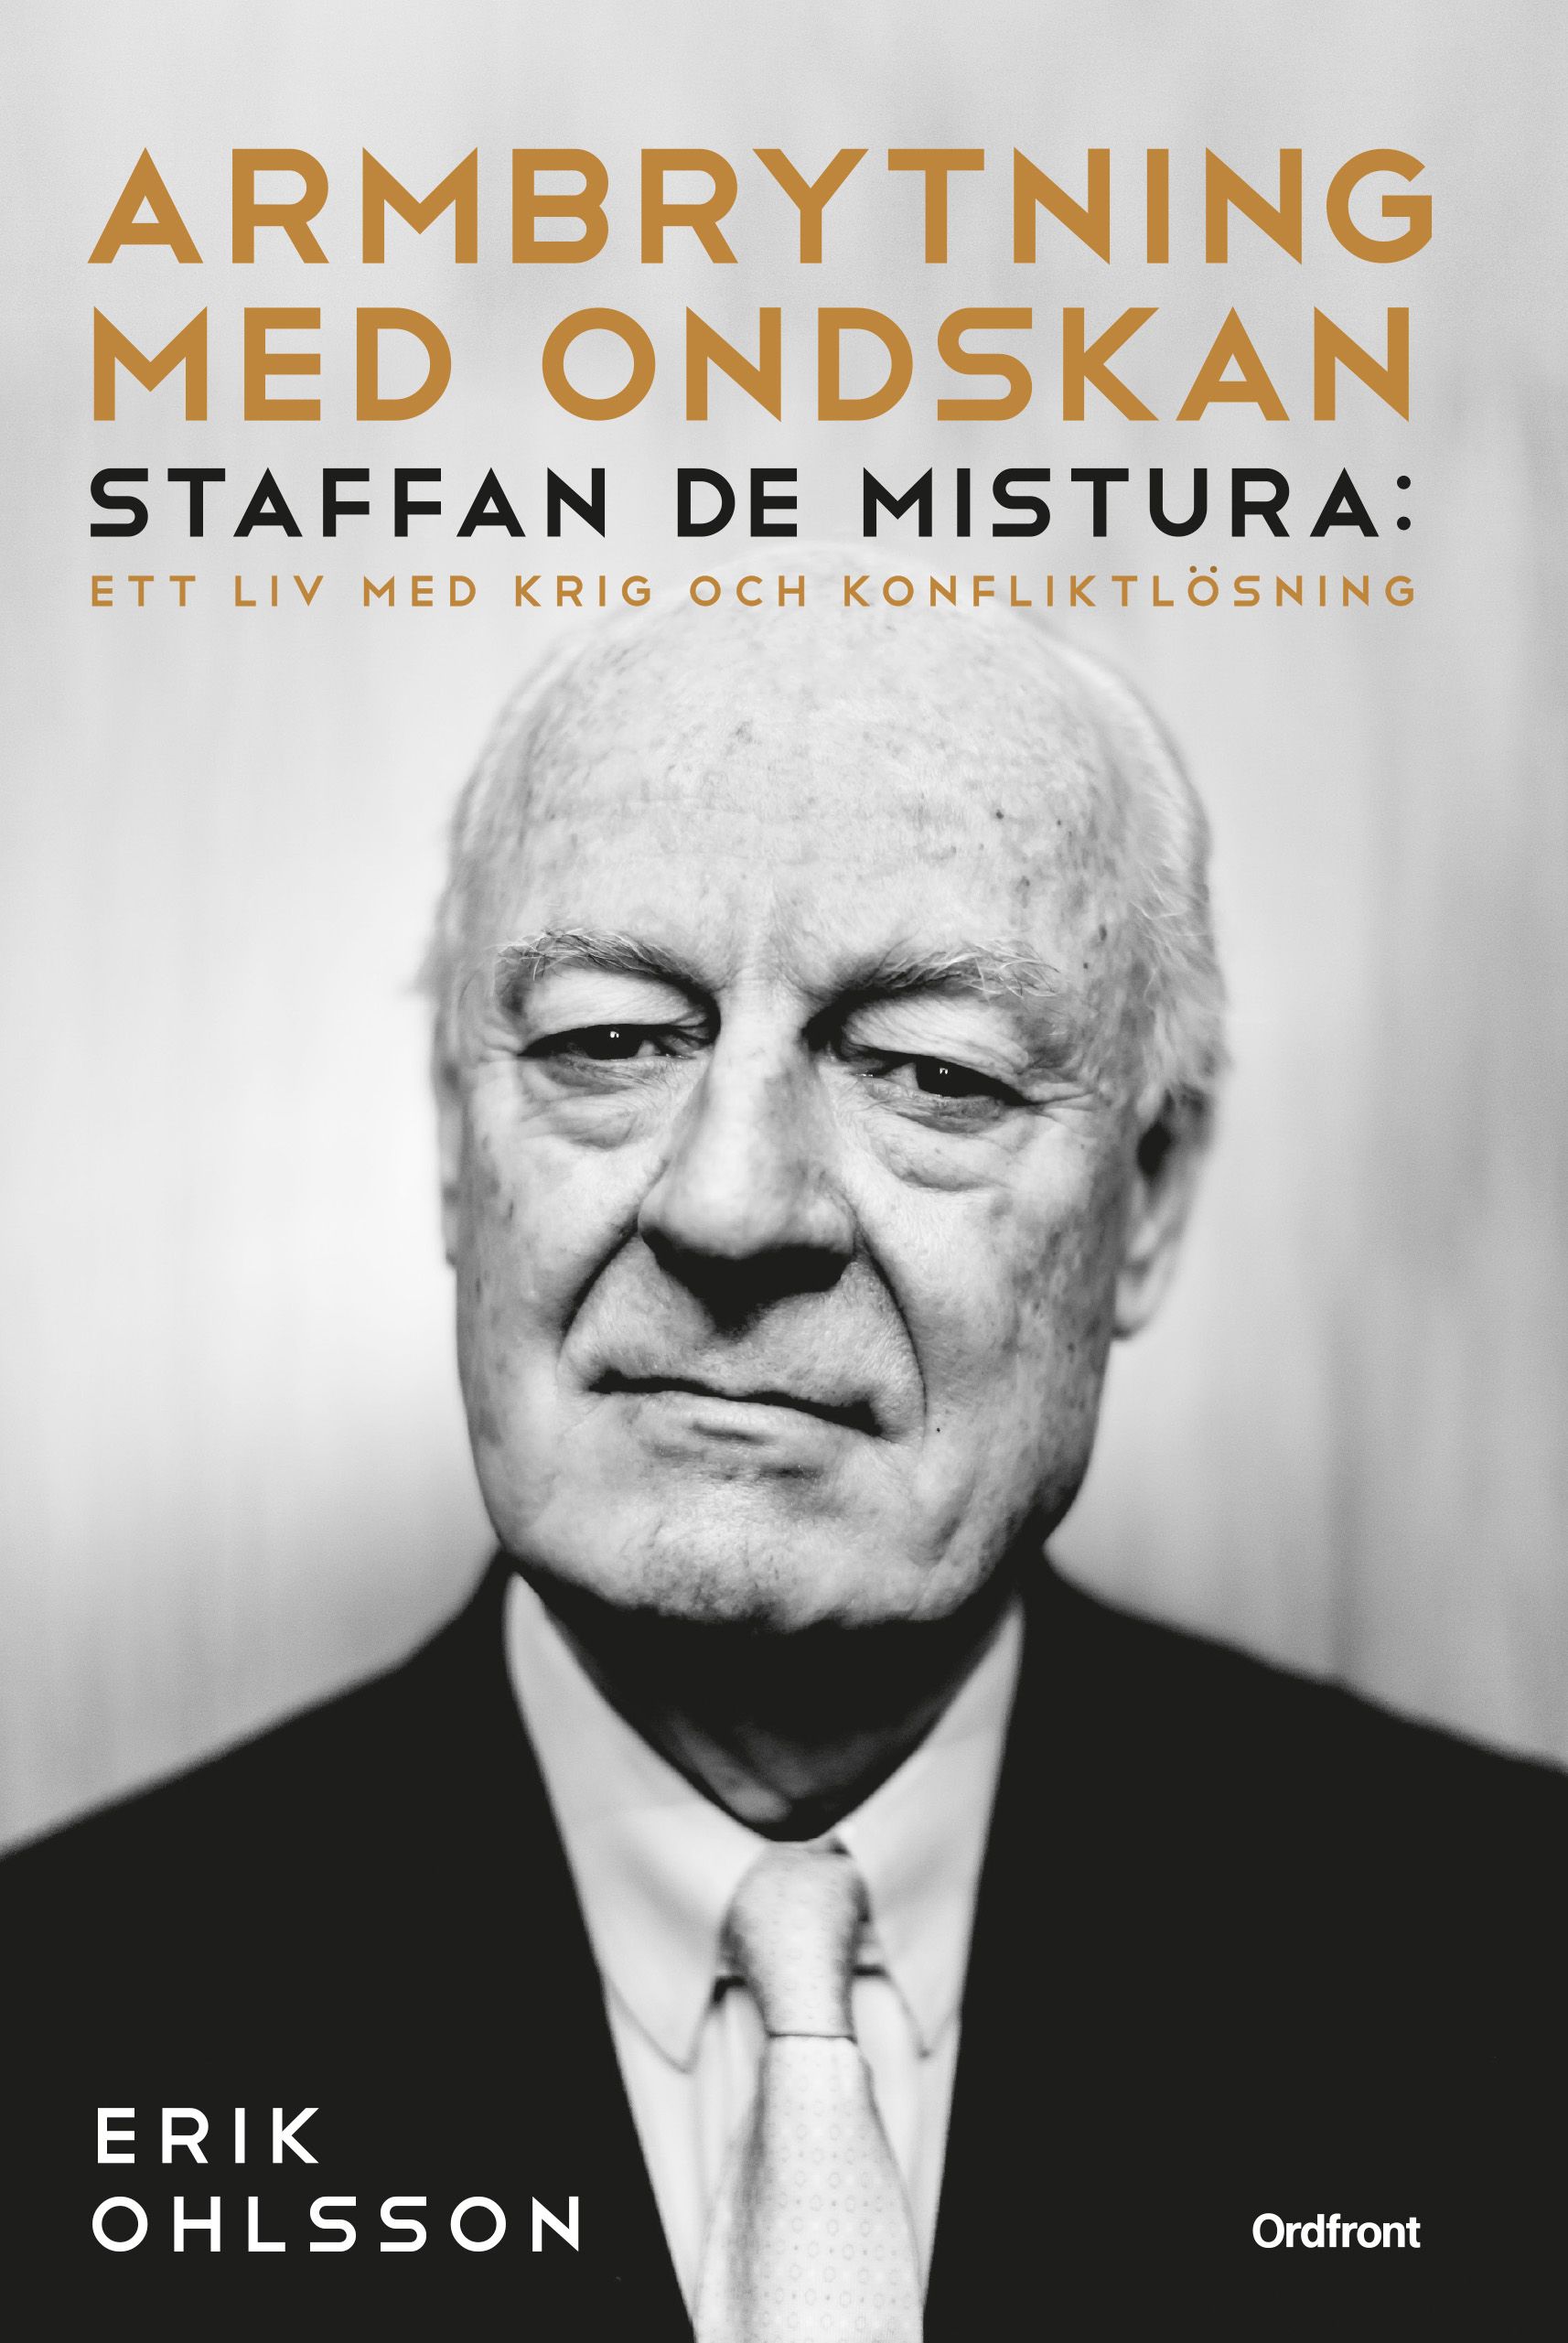 Armbrytning med ondskan : Staffan de Mistura: Ett liv med krig och konfliktlösning, e-bog af Erik Ohlsson